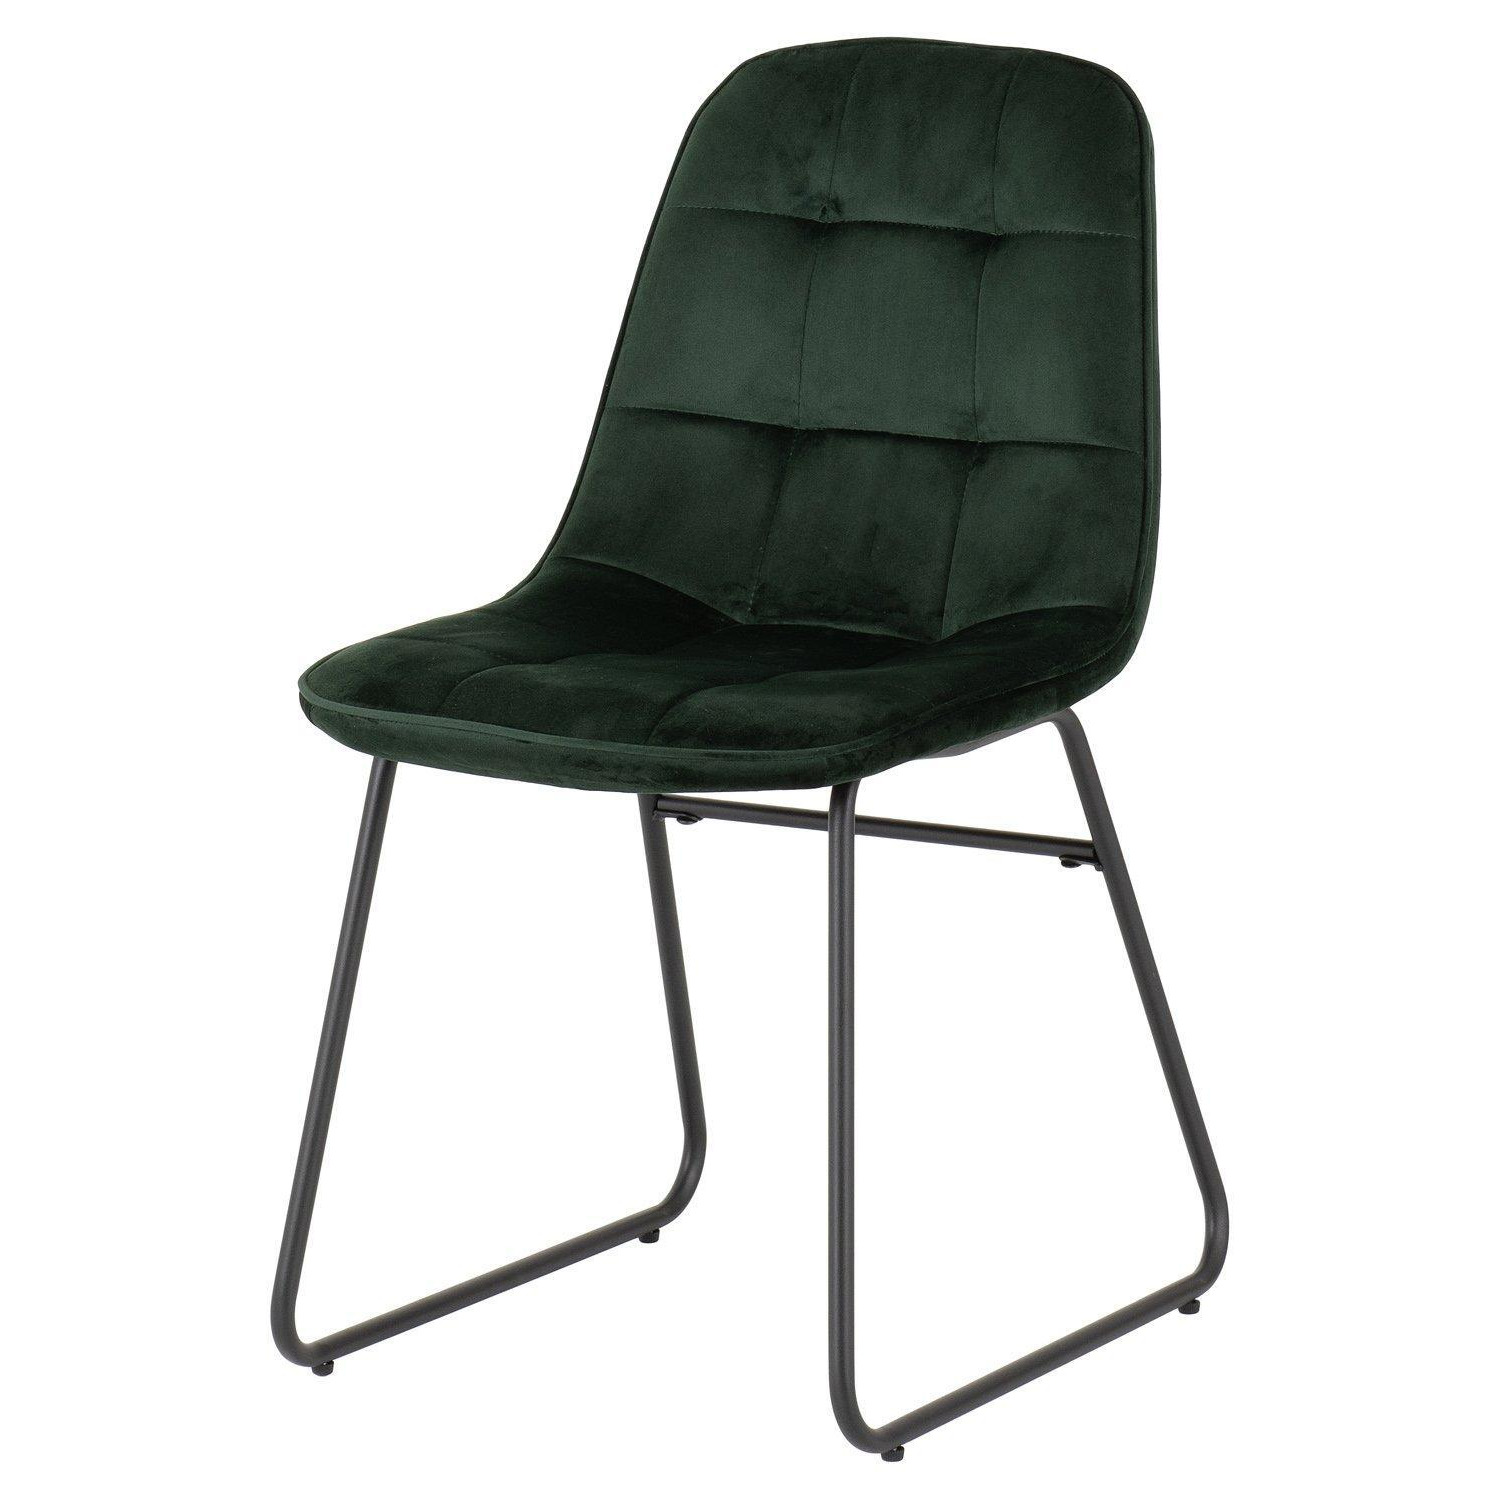 Lukas Chair ( Pair ) - image 1